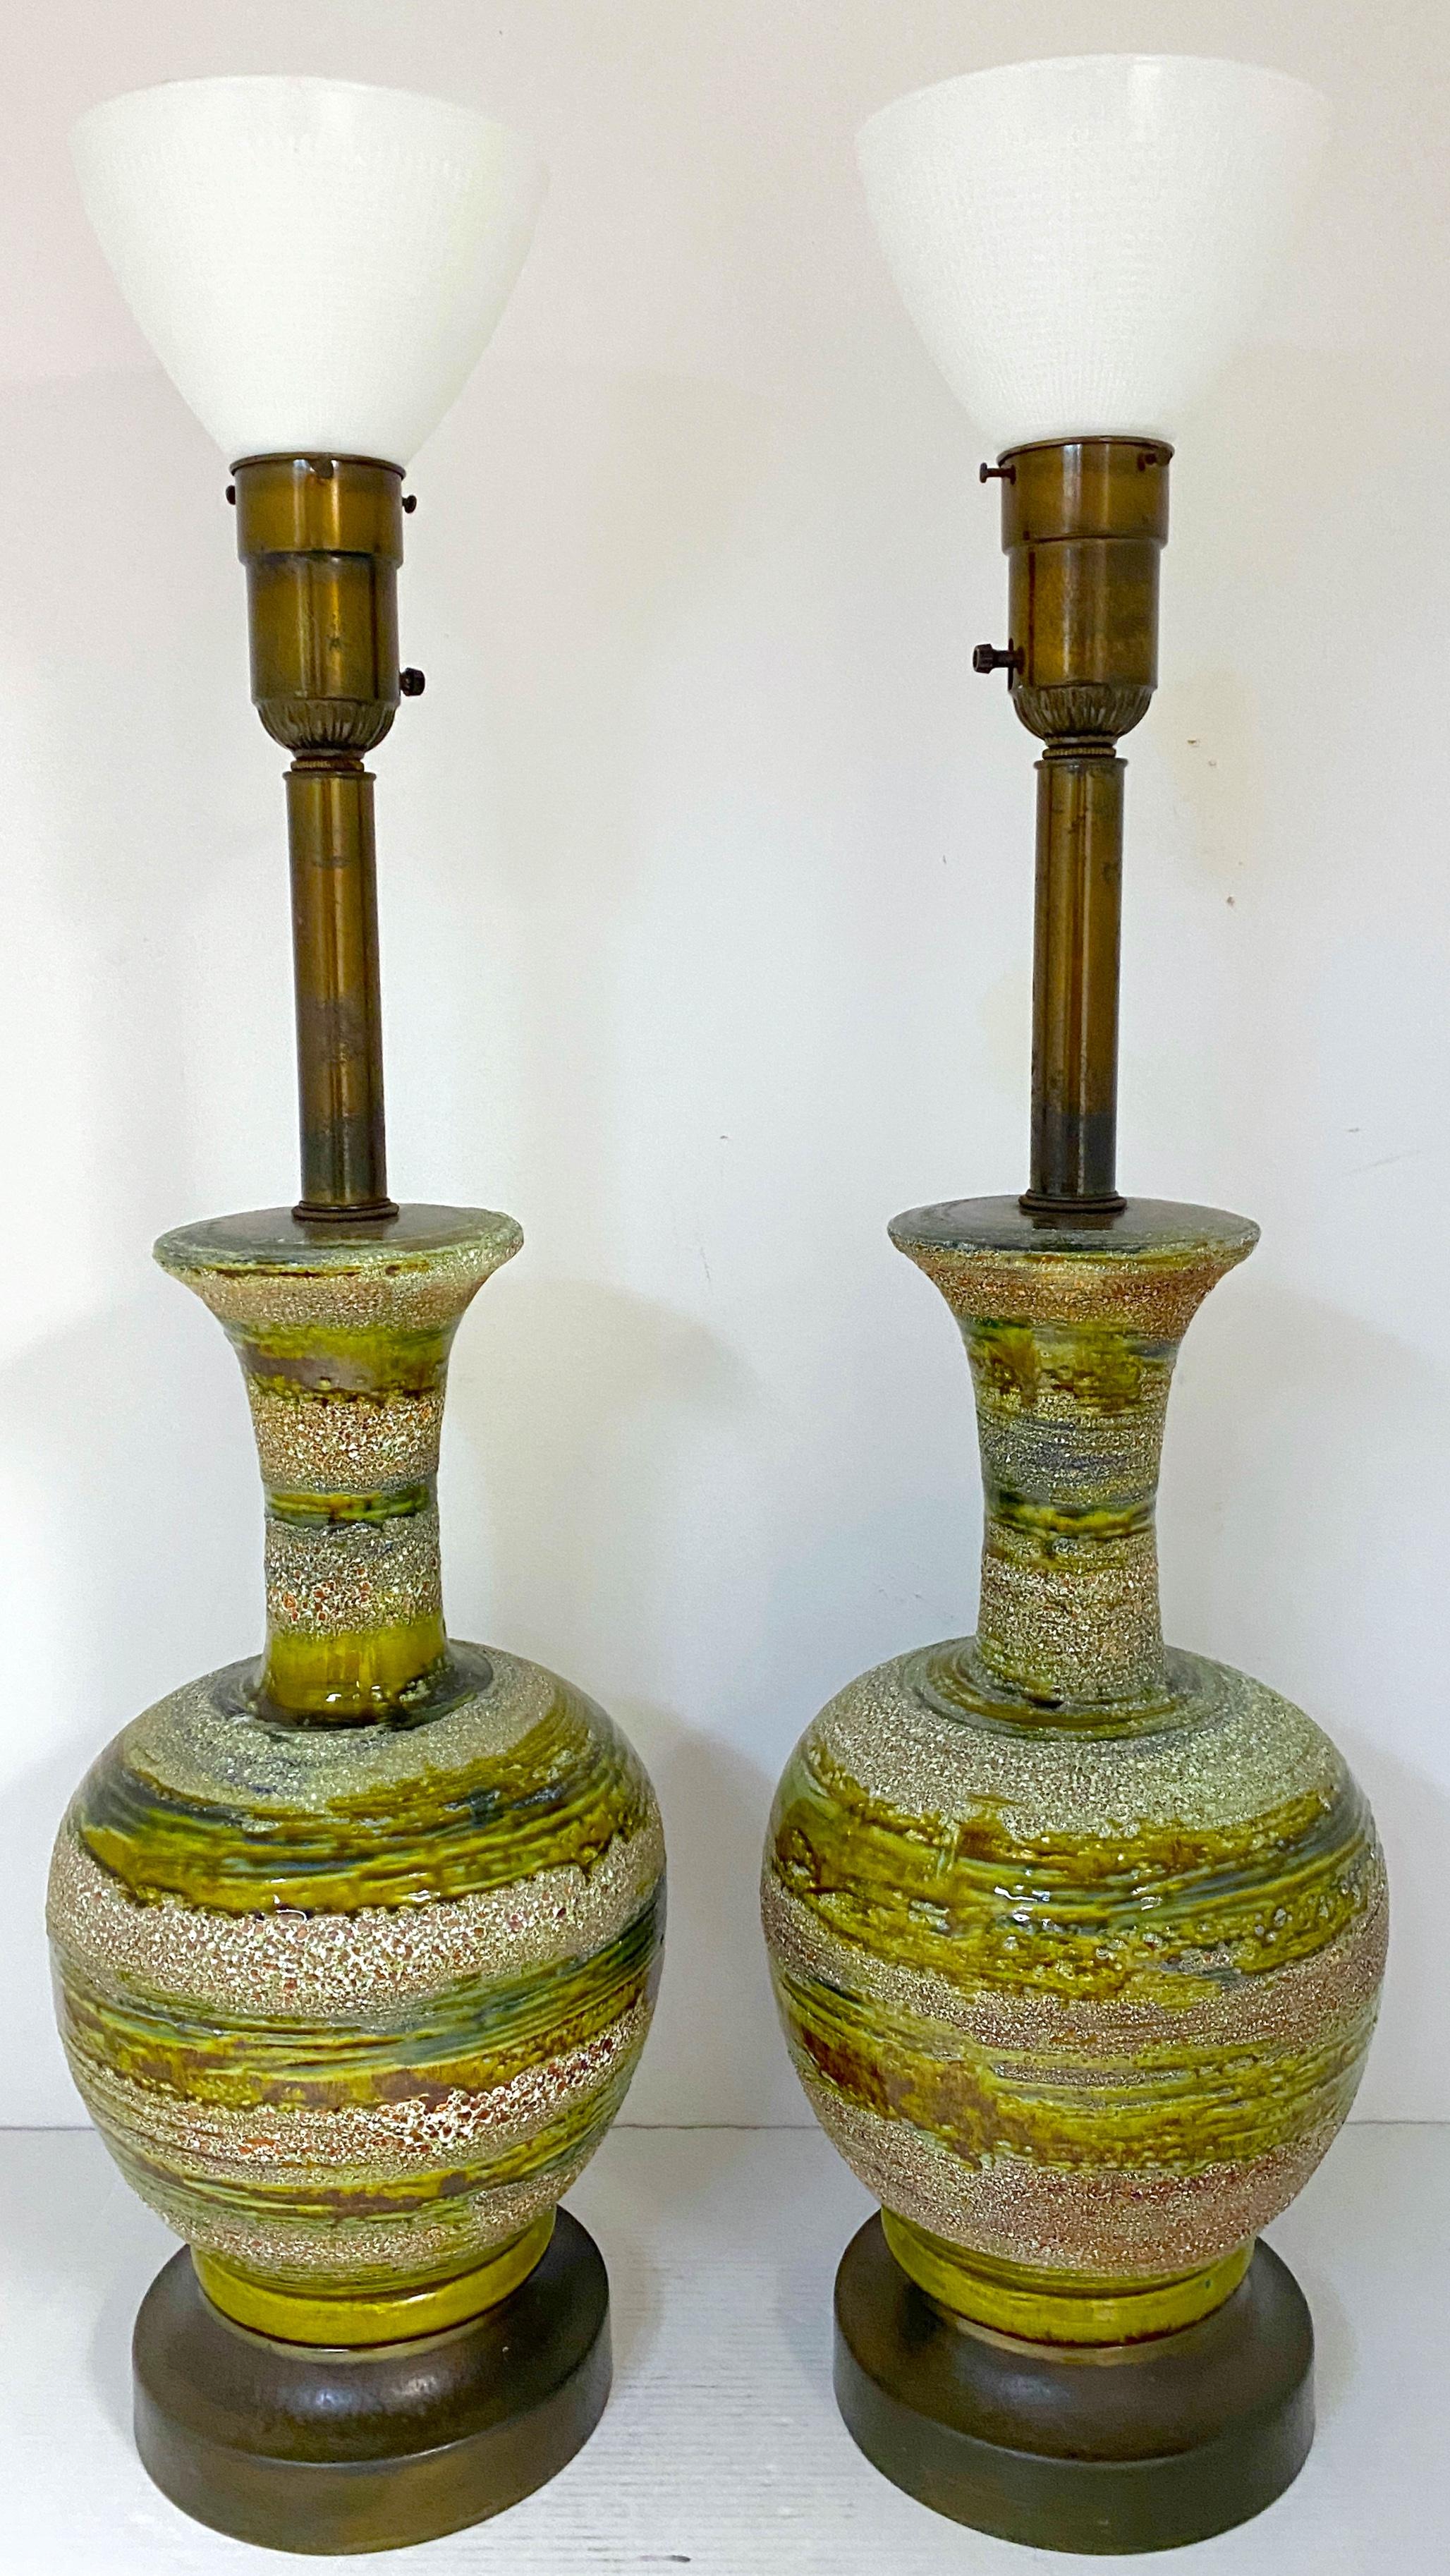 Paire de lampes en poterie de Studio Modernes danoises, vertes, avec globes
Danemark, Circa 1950s

Paire massive de lampes modernes danoises en poterie de studio de couleur verte avec globes, originaires du Danemark dans les années 1950. Chaque